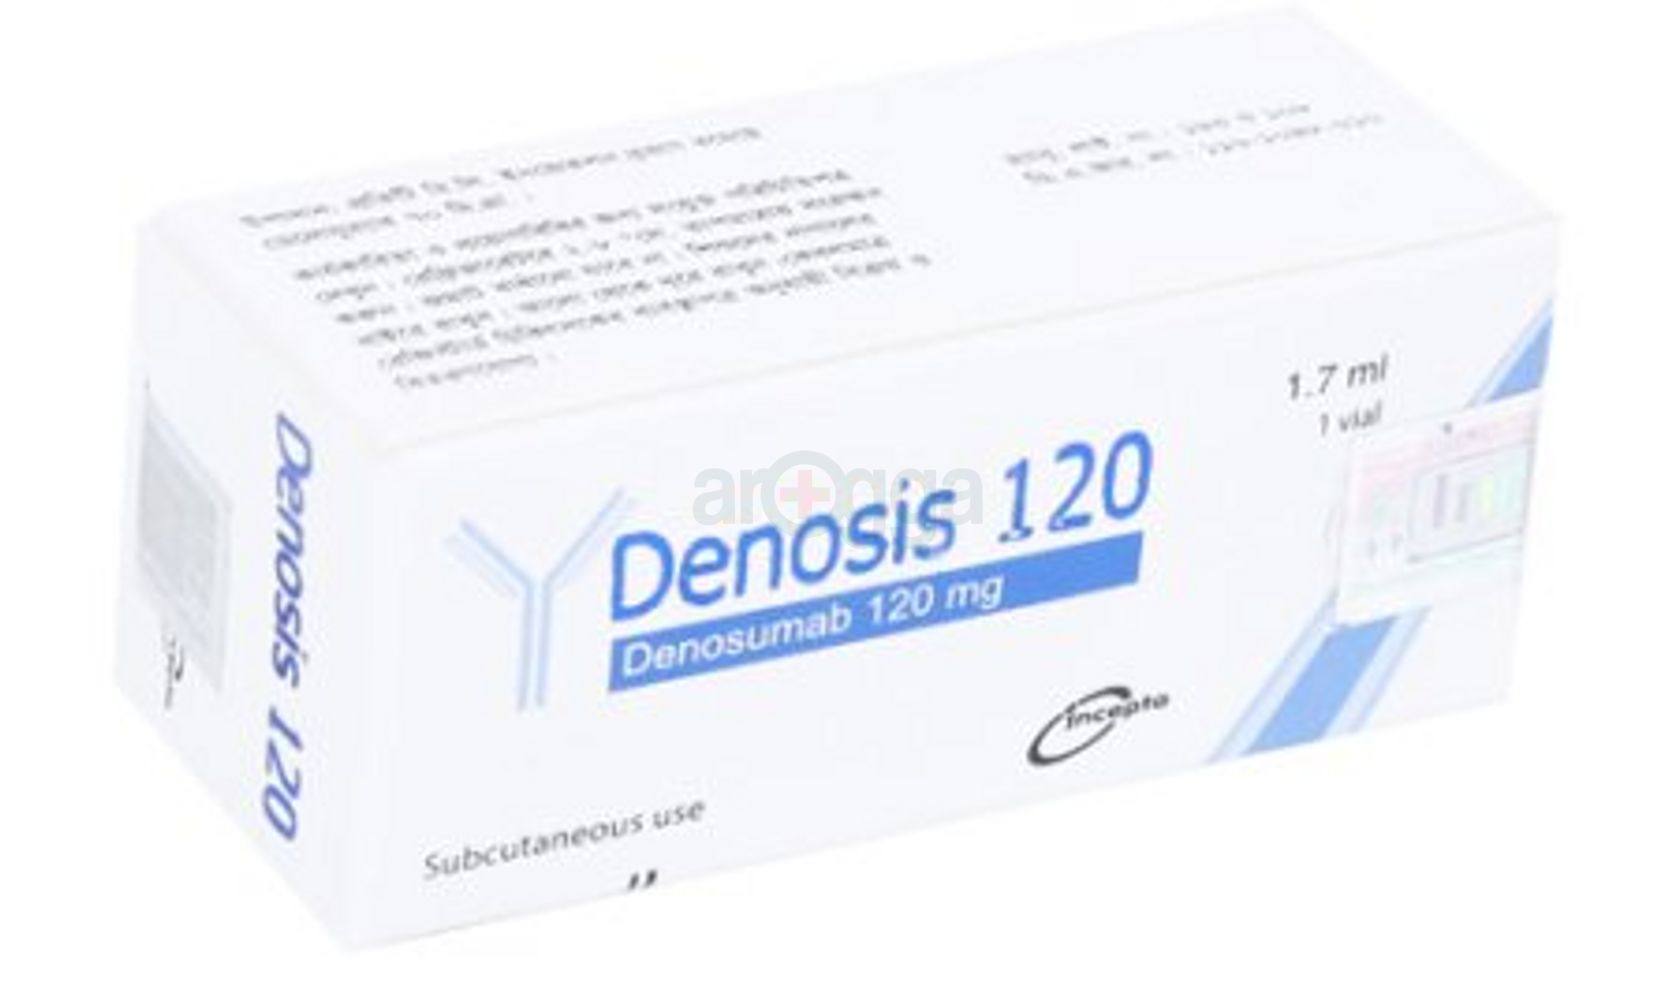 Denosis 120